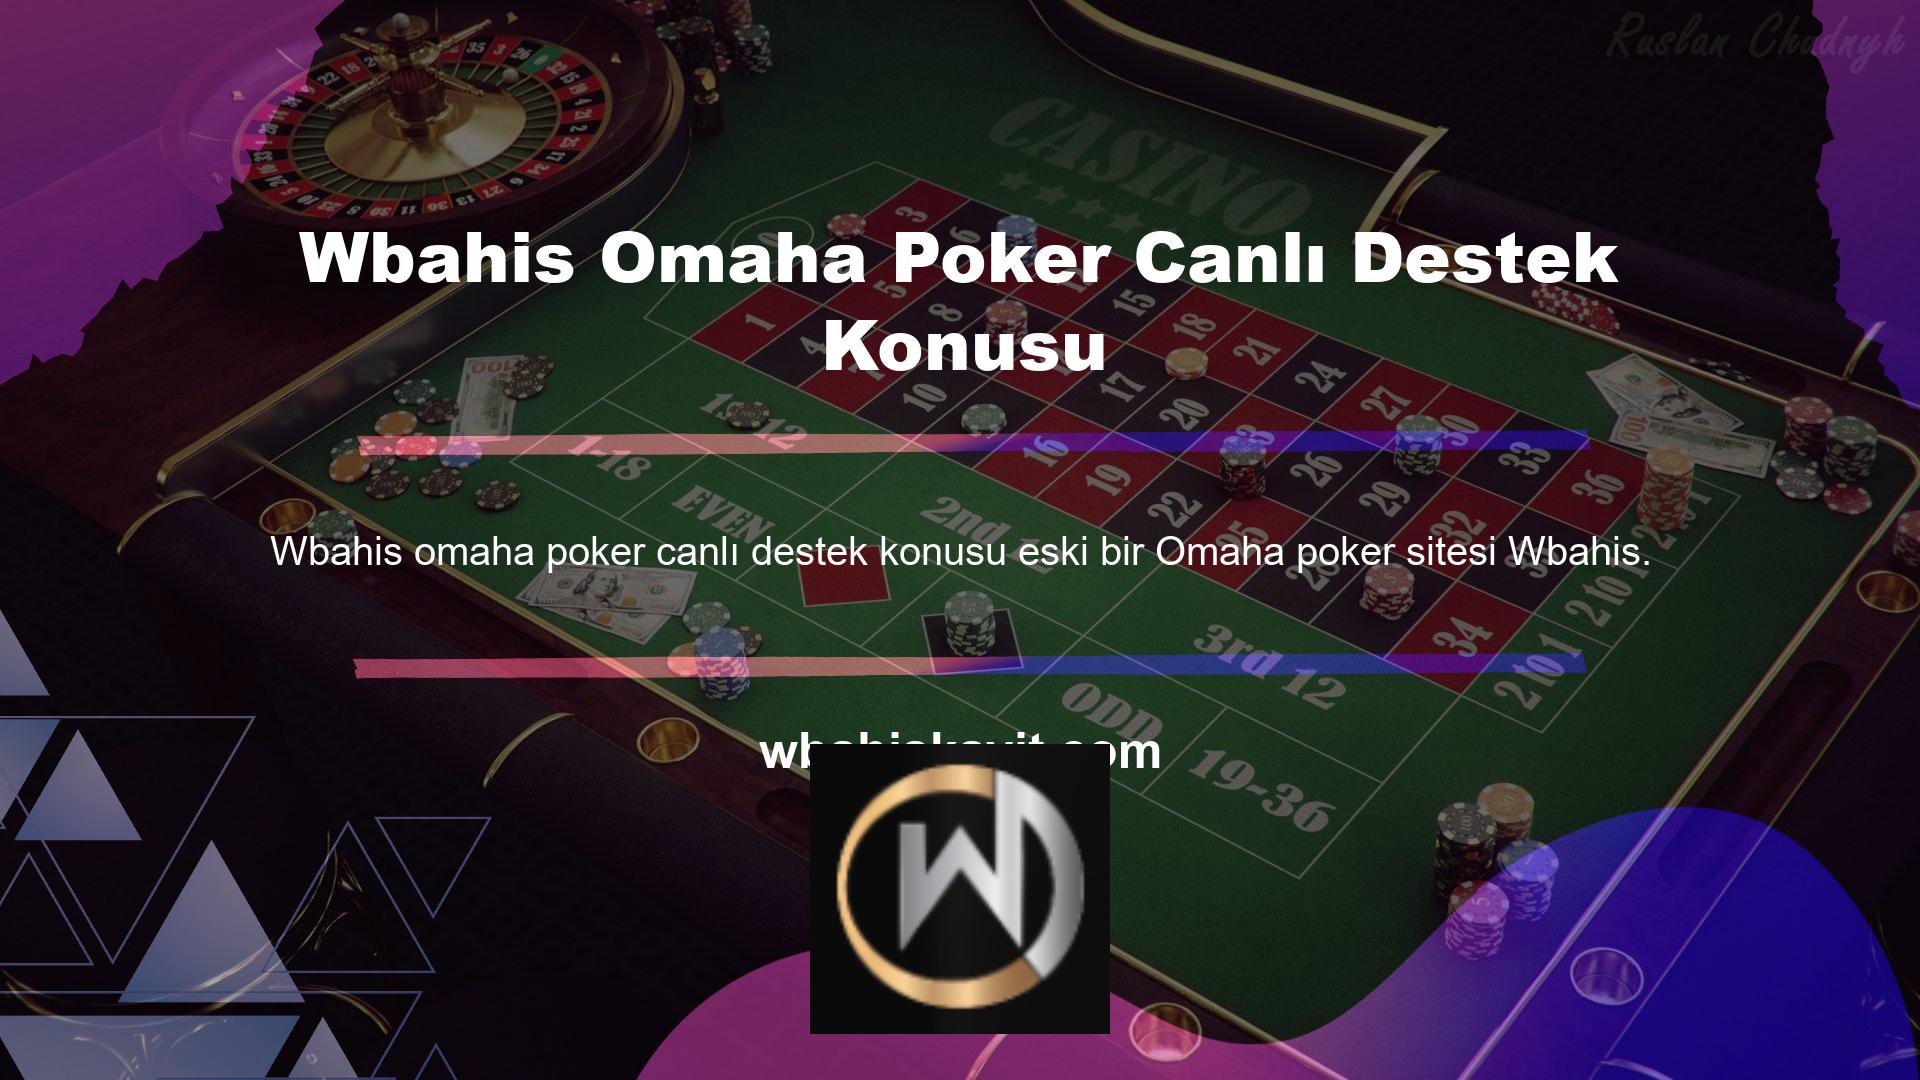 Wbahis omaha poker canlı destek poker odası, Türk pokeri ve her türden gerçek casinoları sunmaktadır